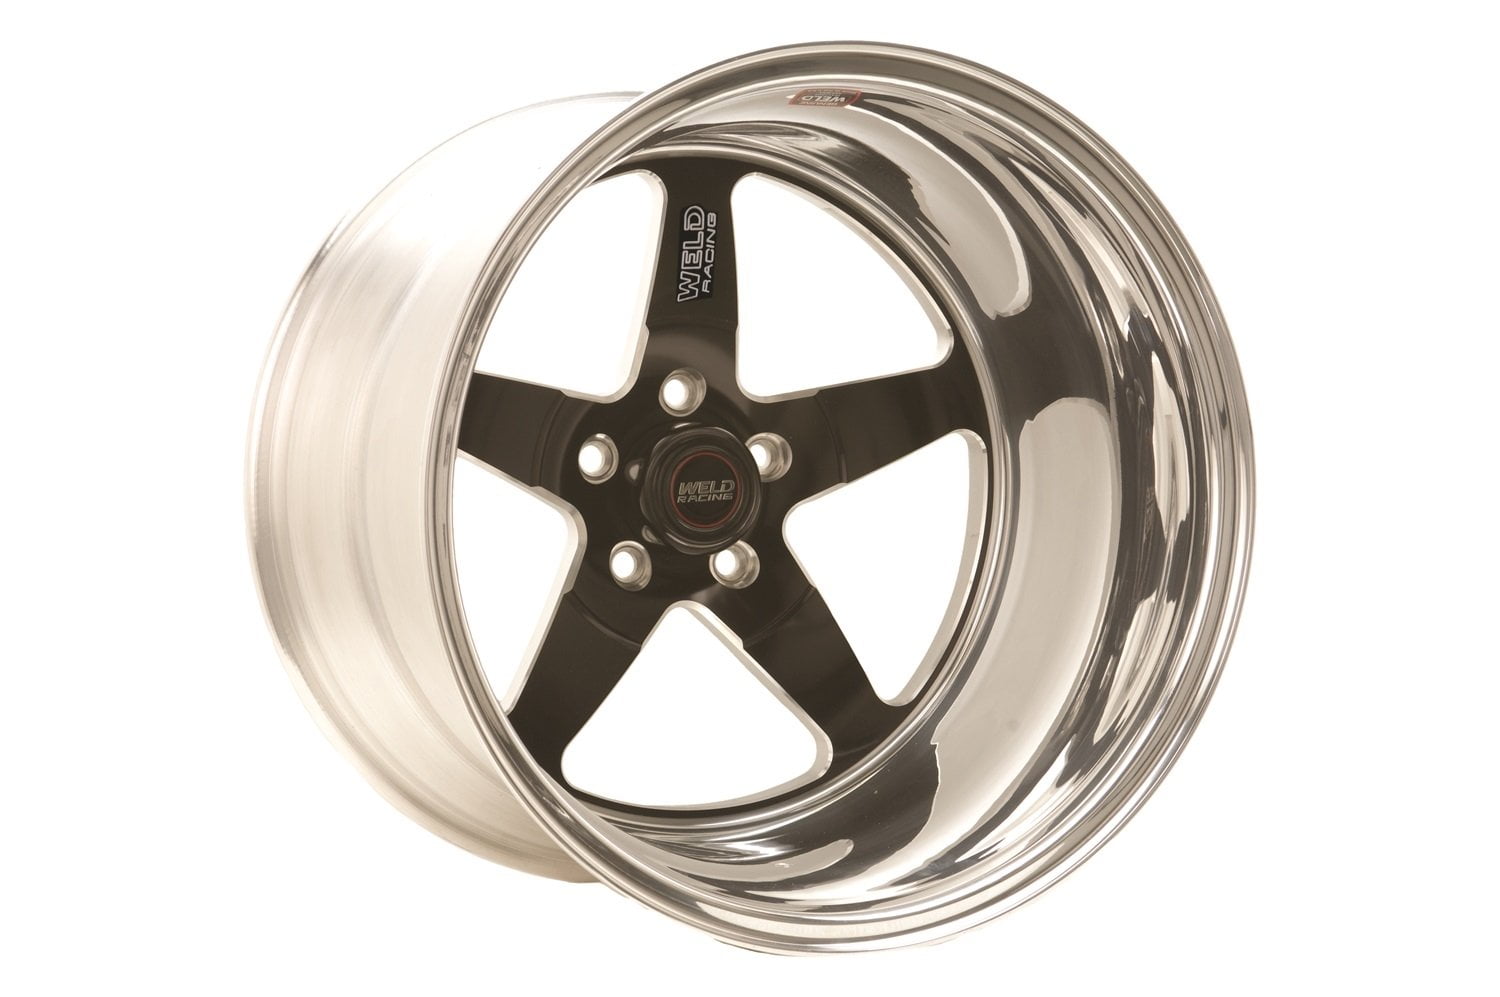 Size: 15" x 10" JEGS 66087 Sport Star 5-Spoke Wheel